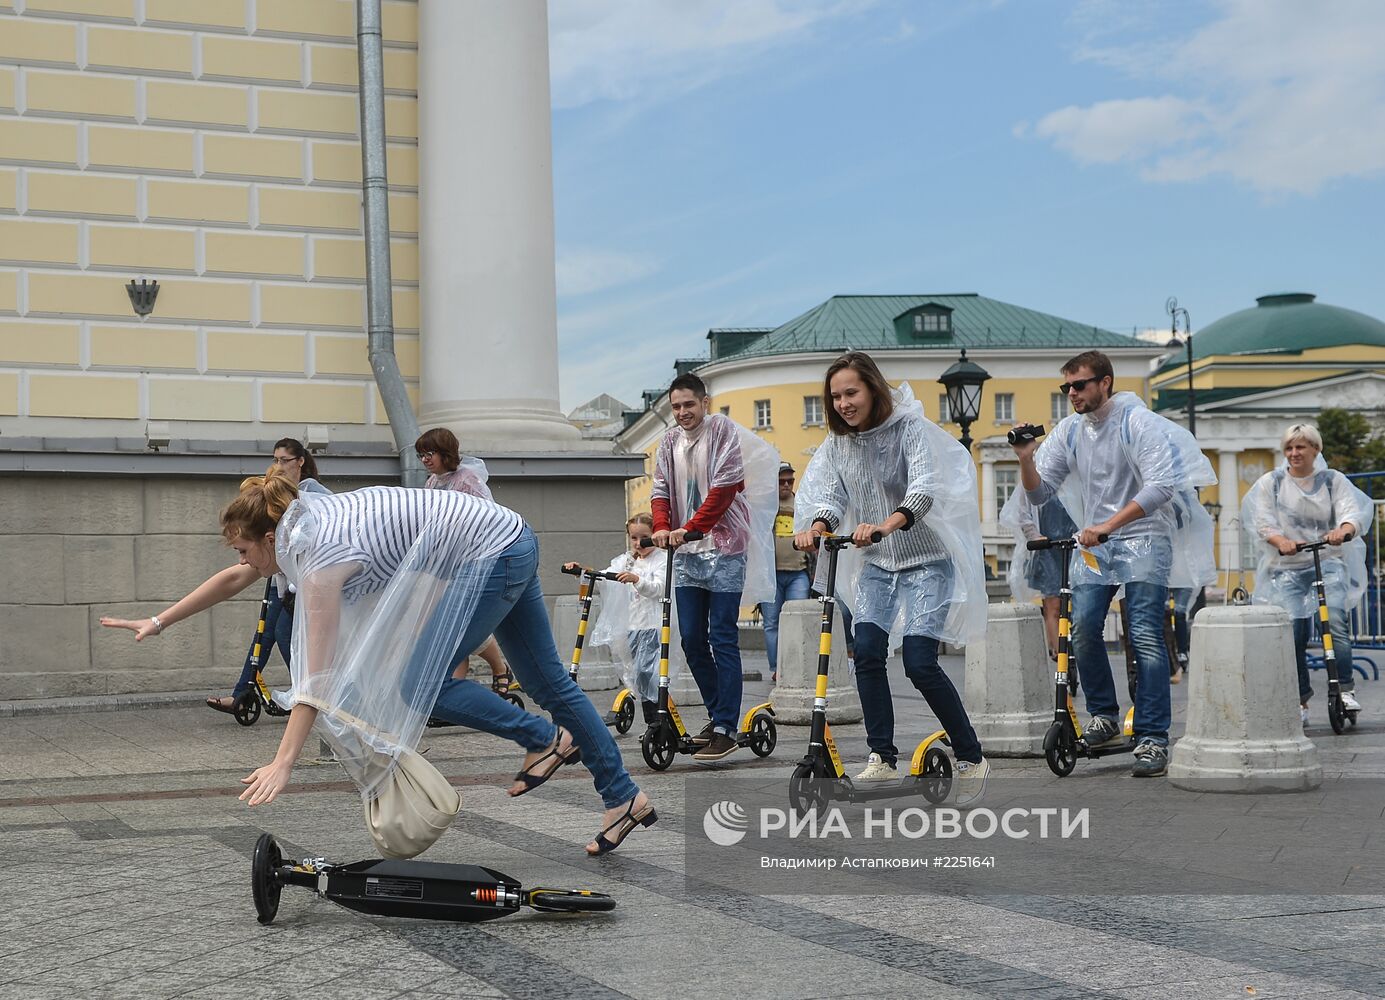 Самокатные маршруты появились в историческом центре Москвы